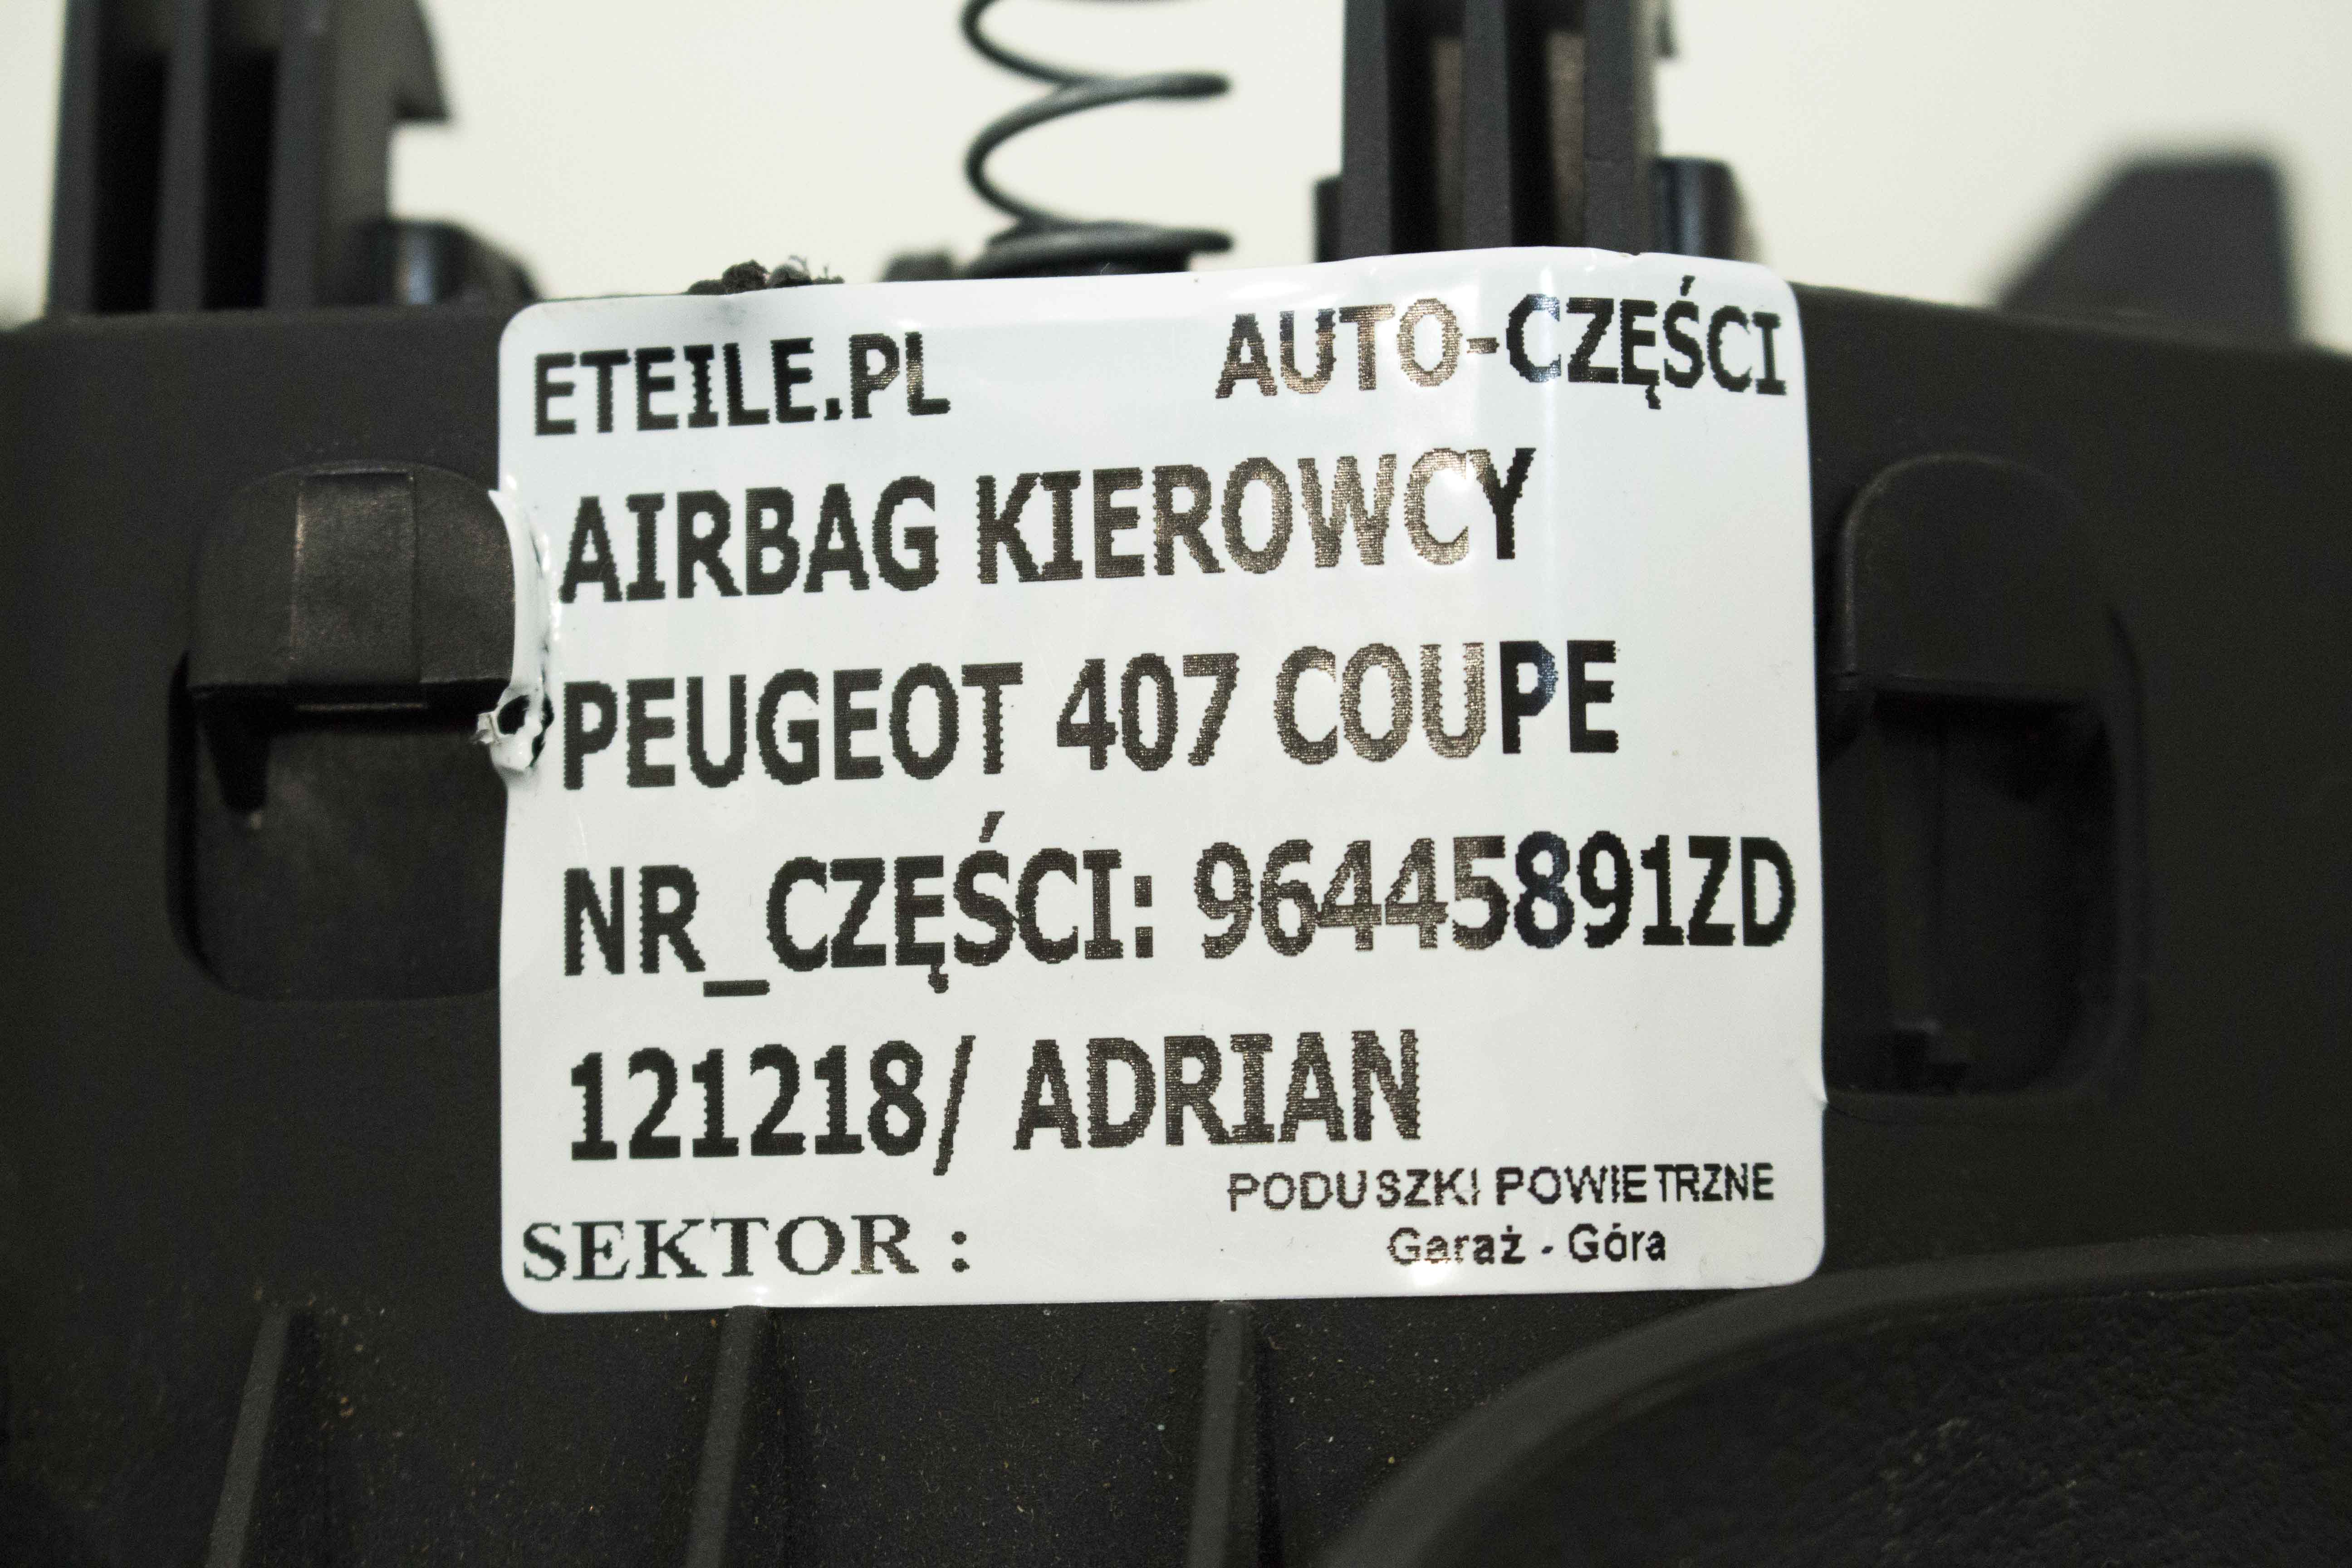 Poduszka Powietrza Airbag Kierowcy Peugeot 407 96445891zd